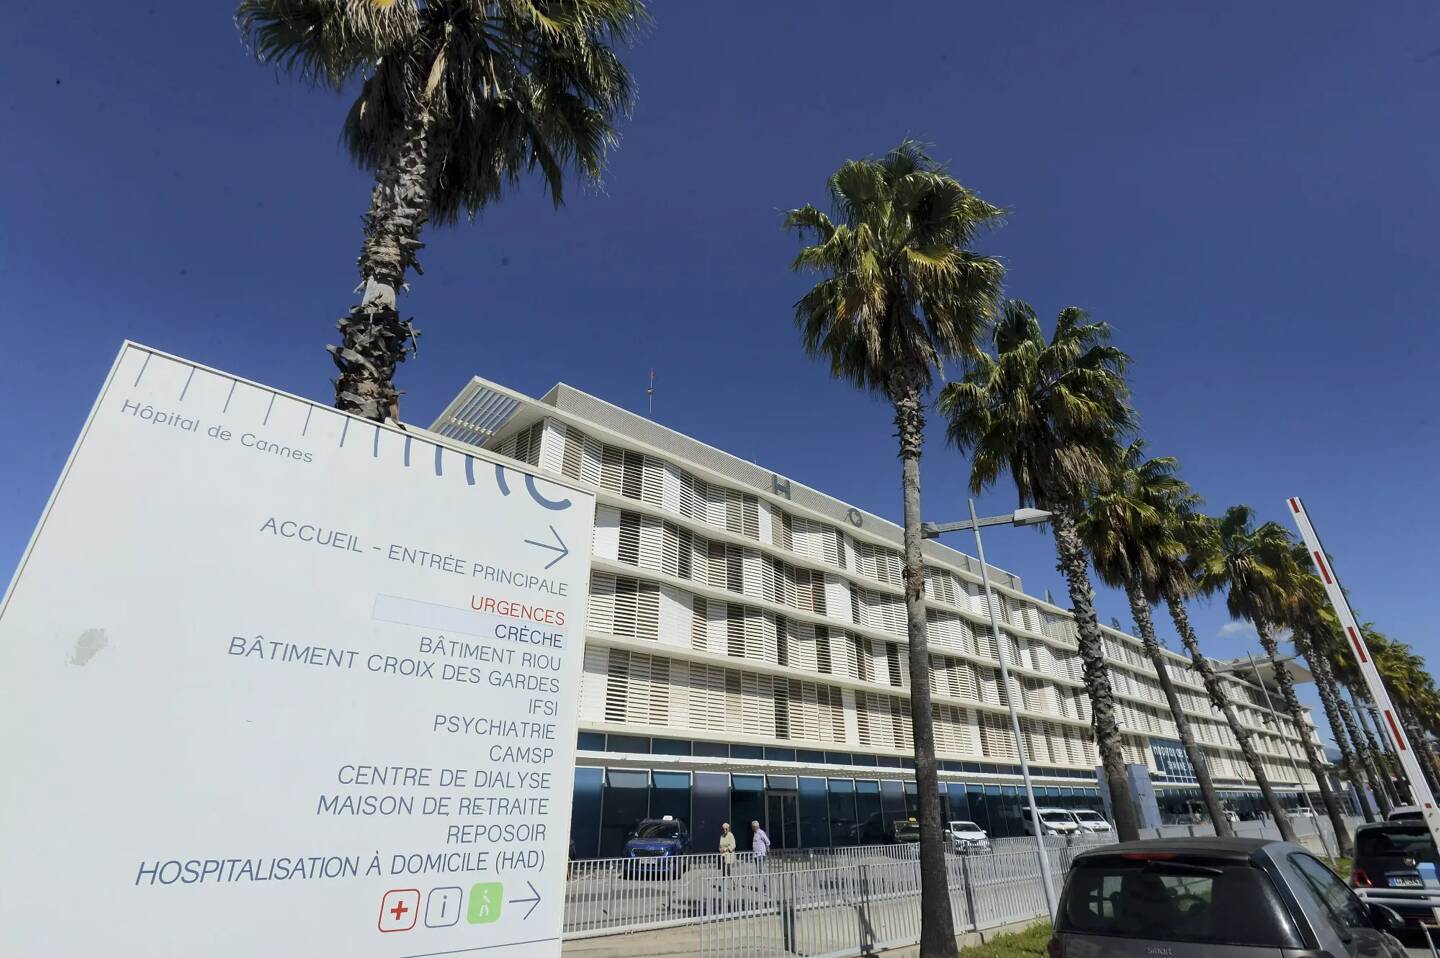 Invité des émissions Cannes-Radio Nice-Matin, le directeur de l’hôpital Simone-Veil a évoqué la gestion de cet établissement de soins public qui emploie 2 000 salariés, dans un contexte économique concurrentiel.